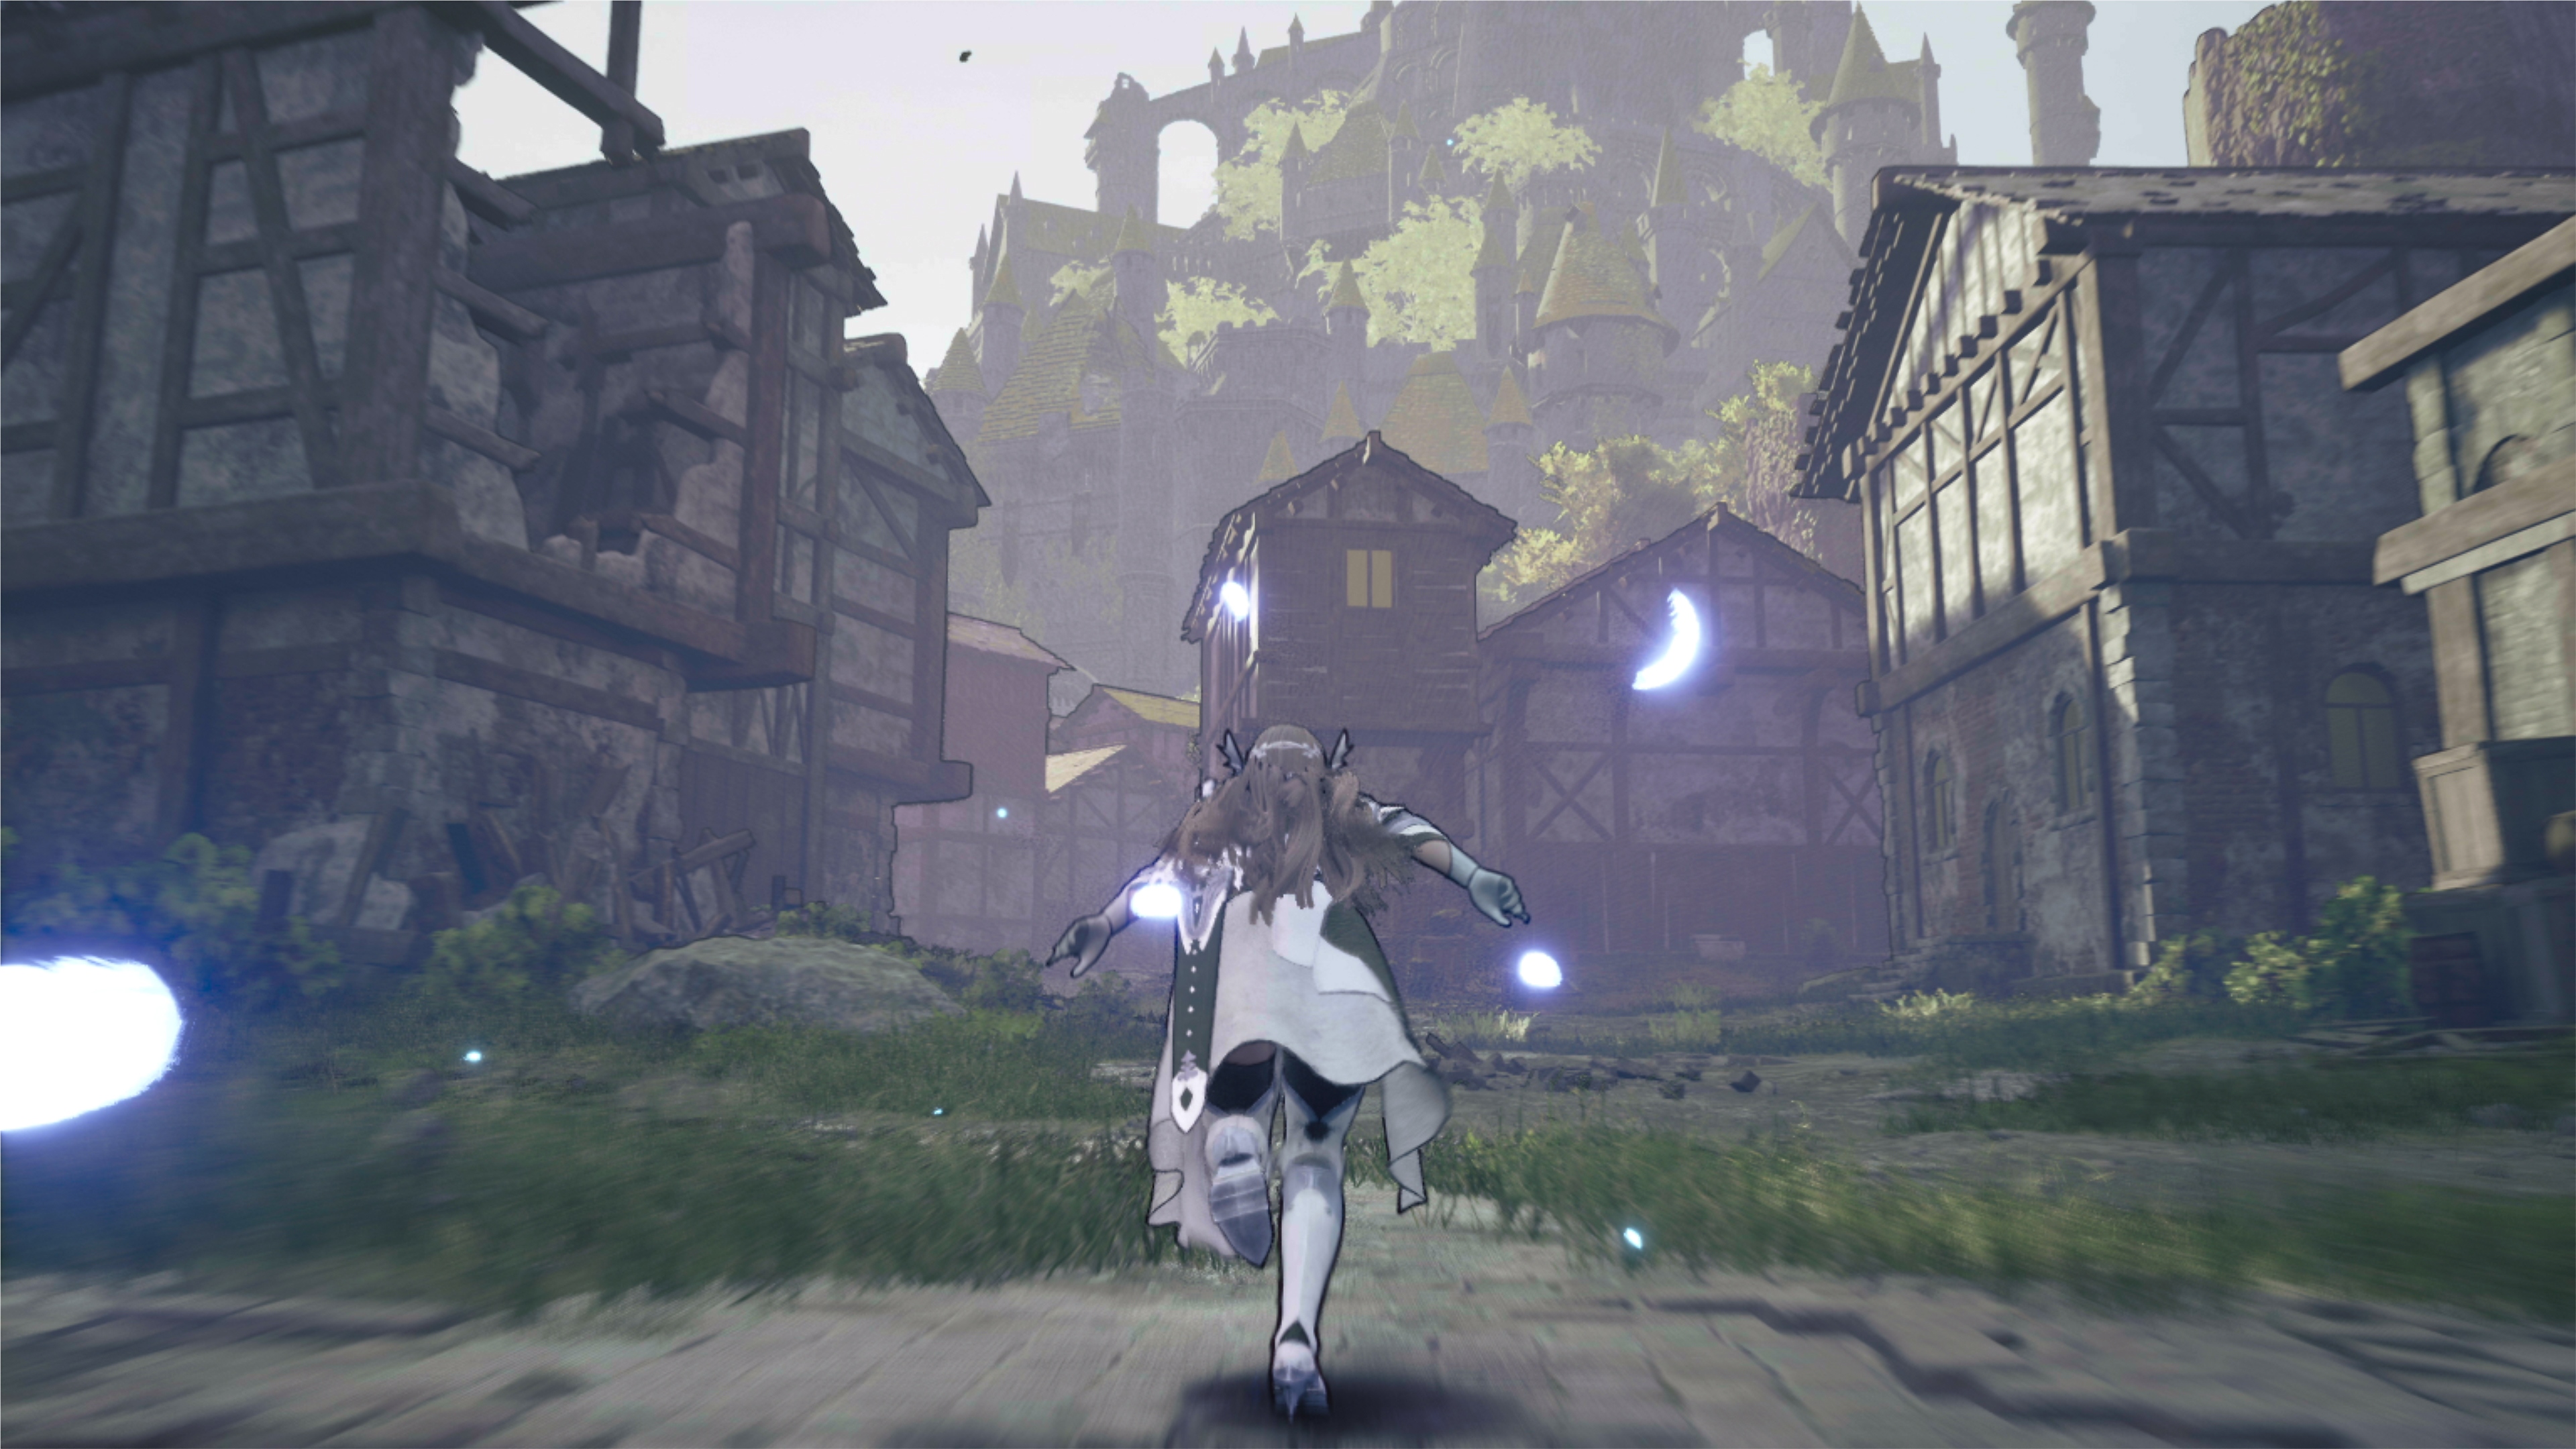 Valkyrie Elysiumin kuvakaappaus, jossa hahmo juoksee tuhoutuneen kylän läpi